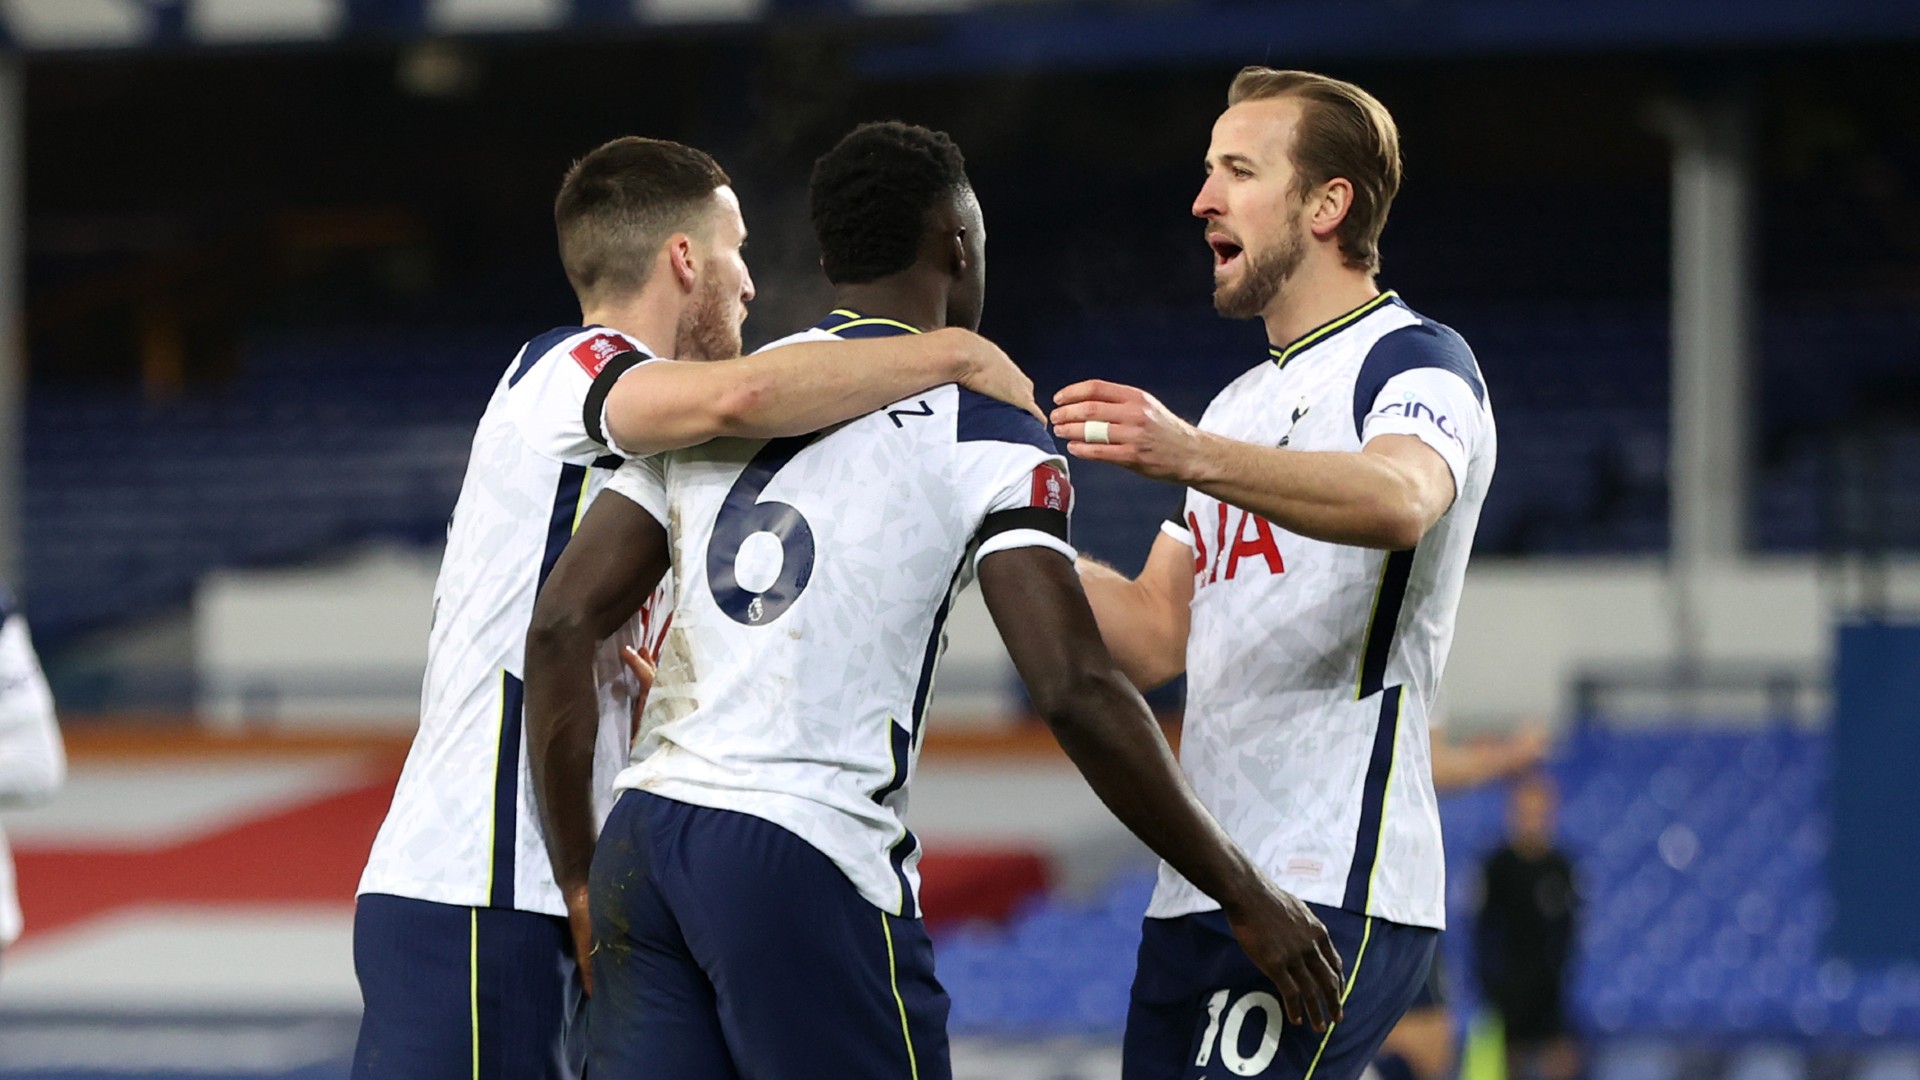 Kane moves second on Tottenham all-time goalscorer chart with strike against Everton